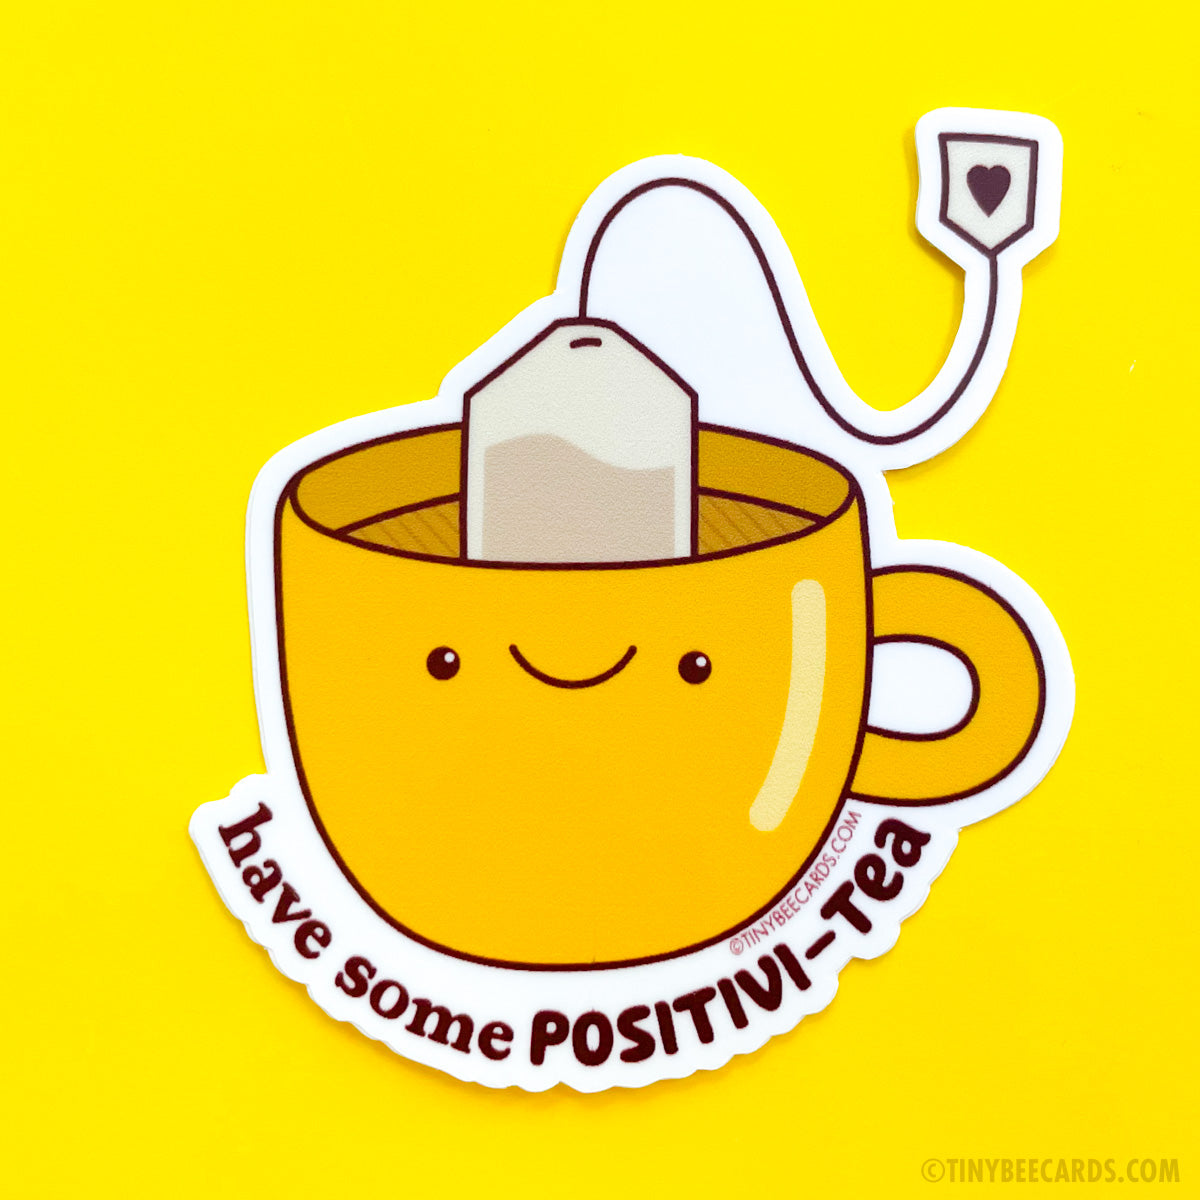 Tea Positivity Vinyl Sticker - Have Some Positivi-tea